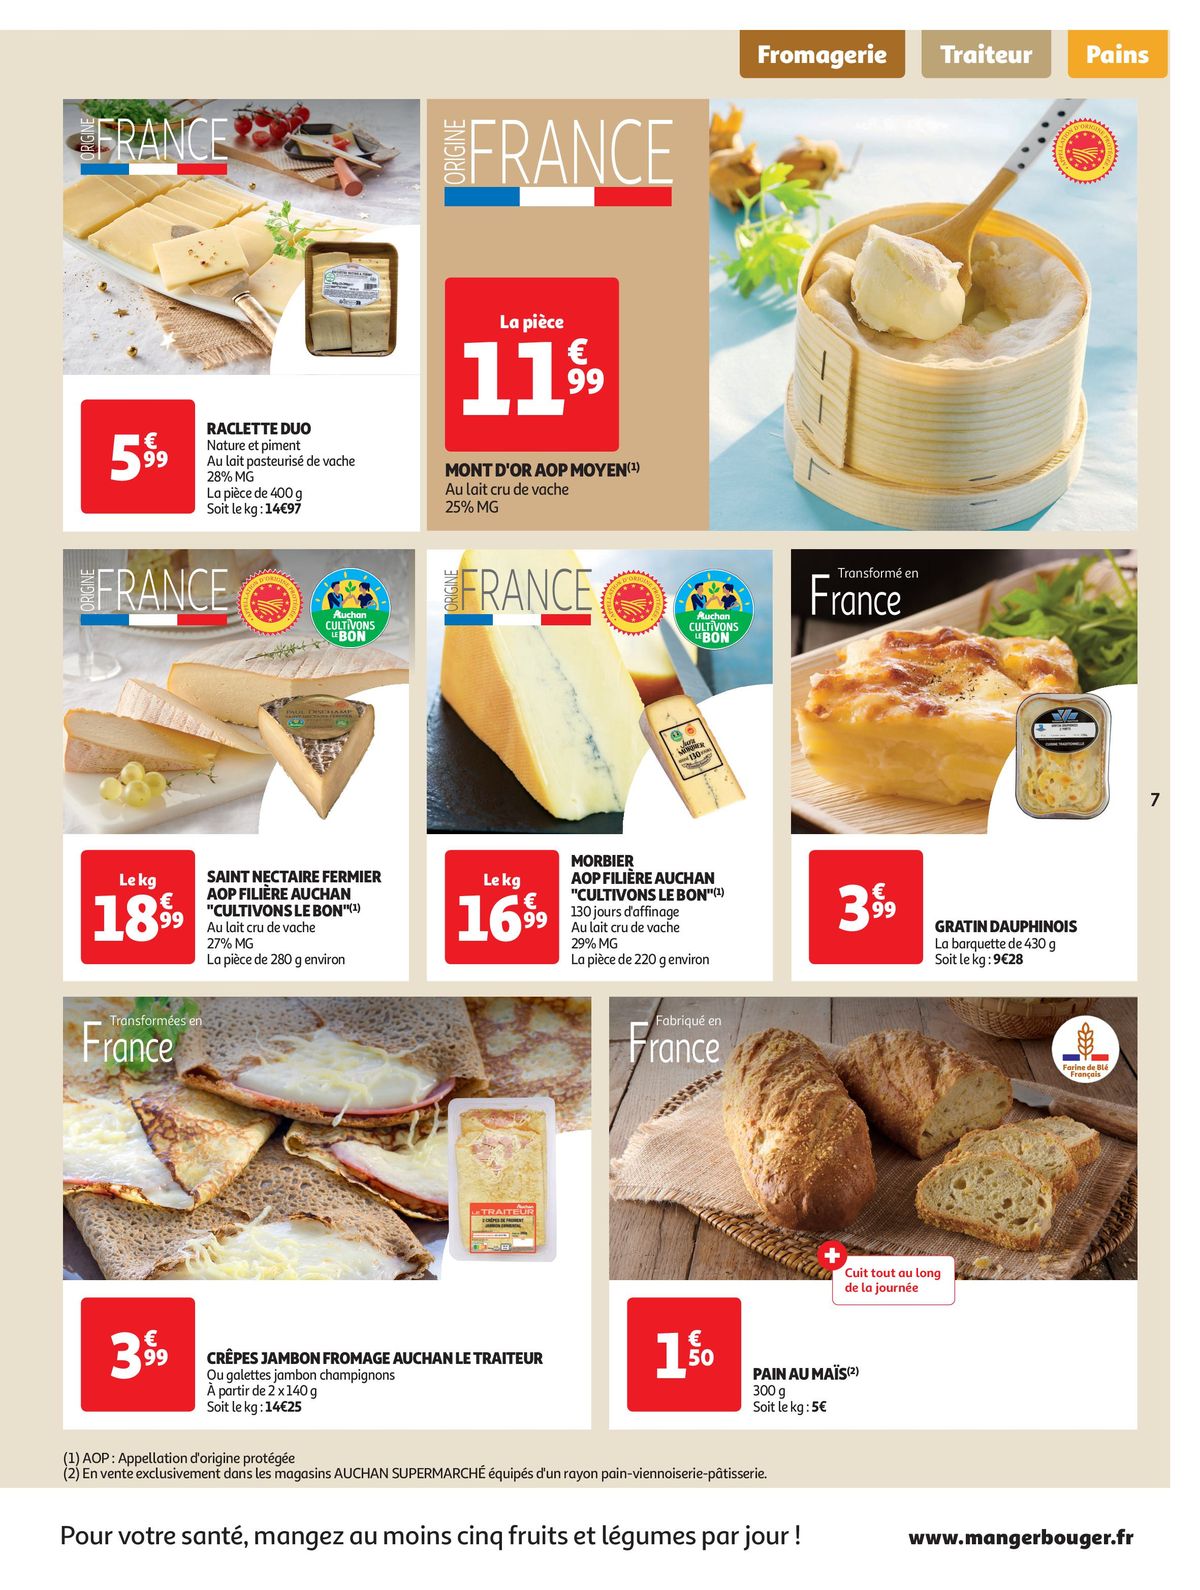 Catalogue Spécial Cuisine Gourmane dans votre supermarché, page 00007